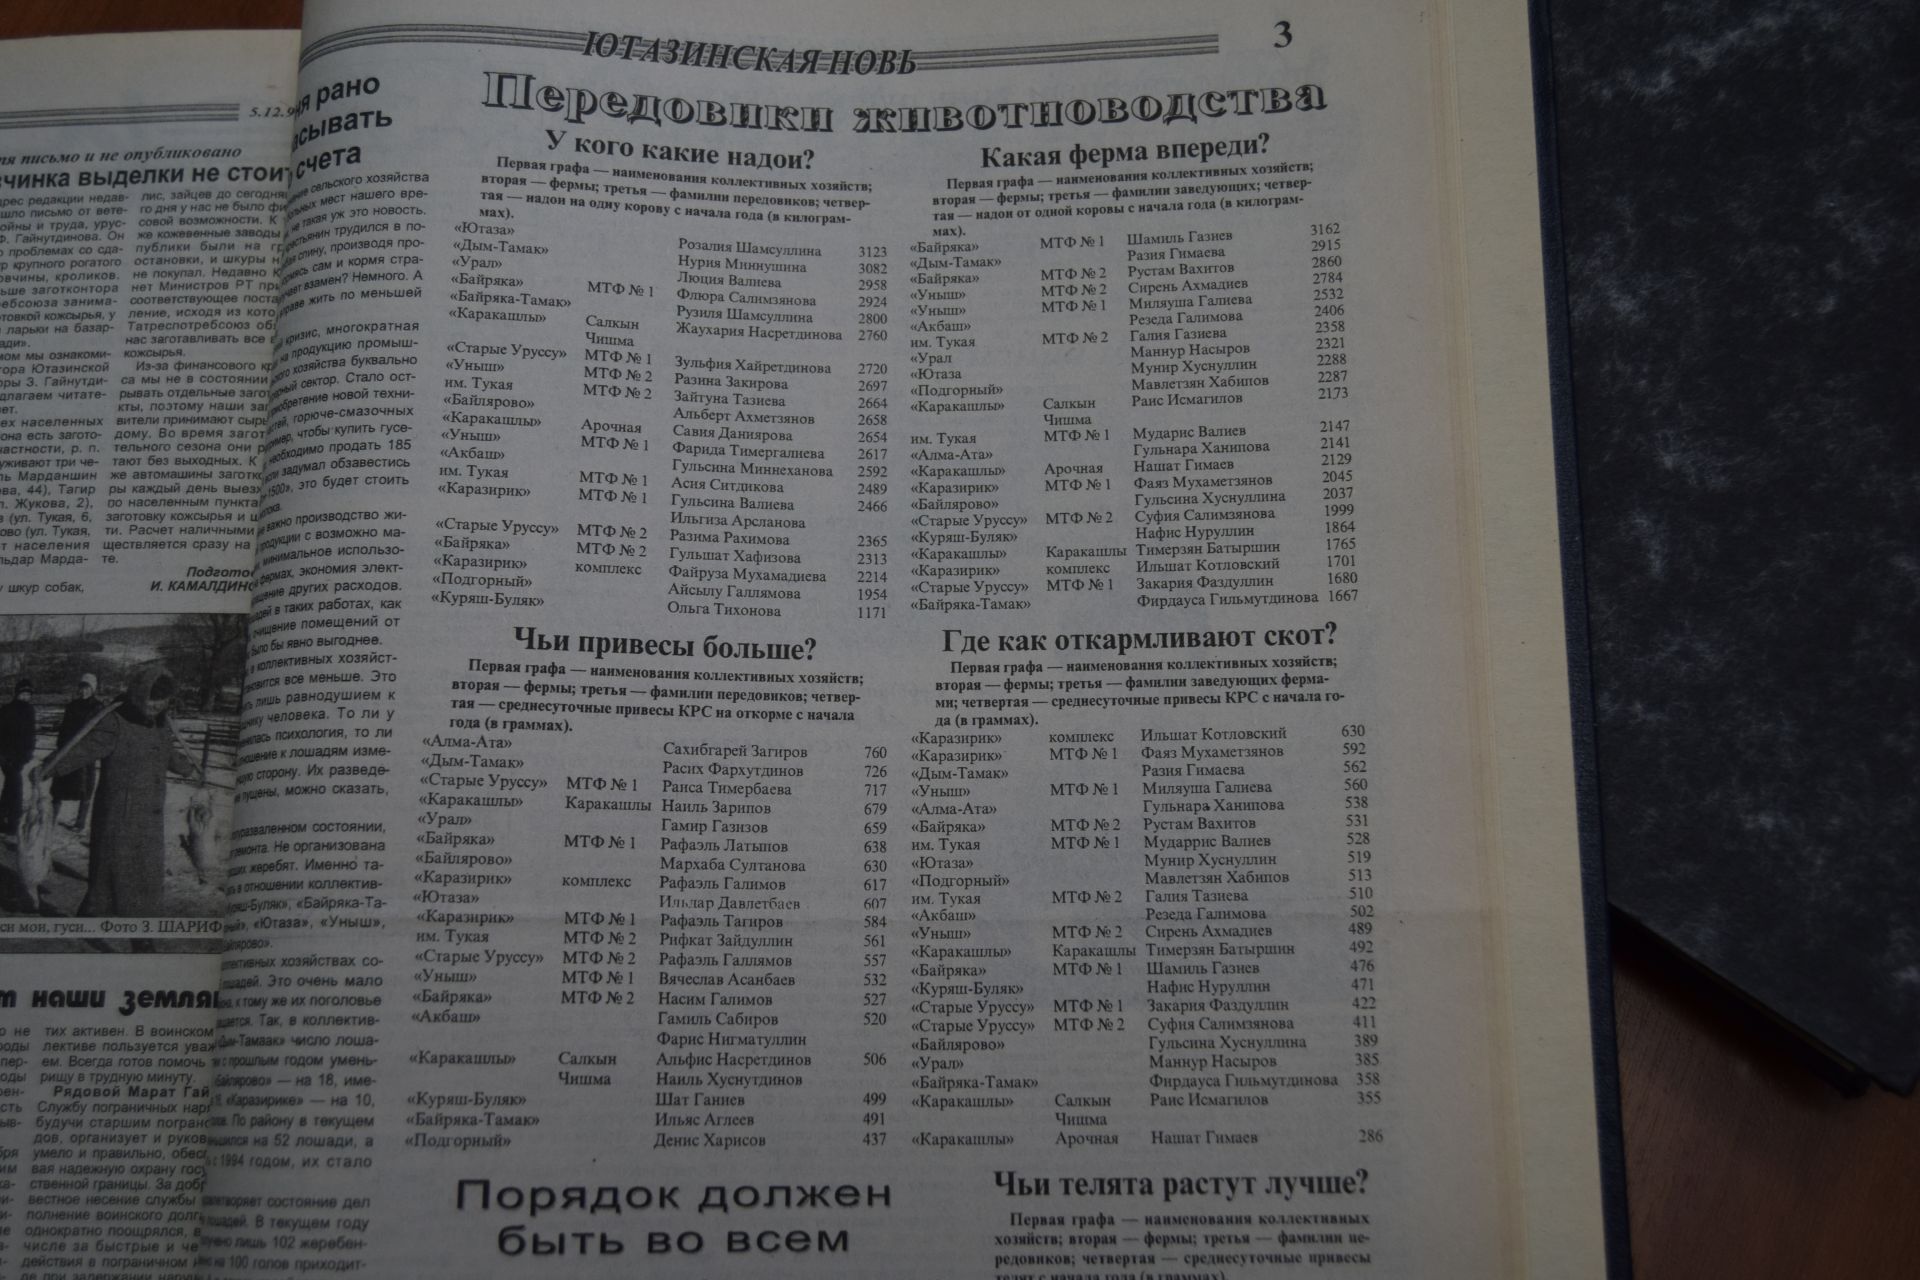 Передовики Ютазинского района 1998 года